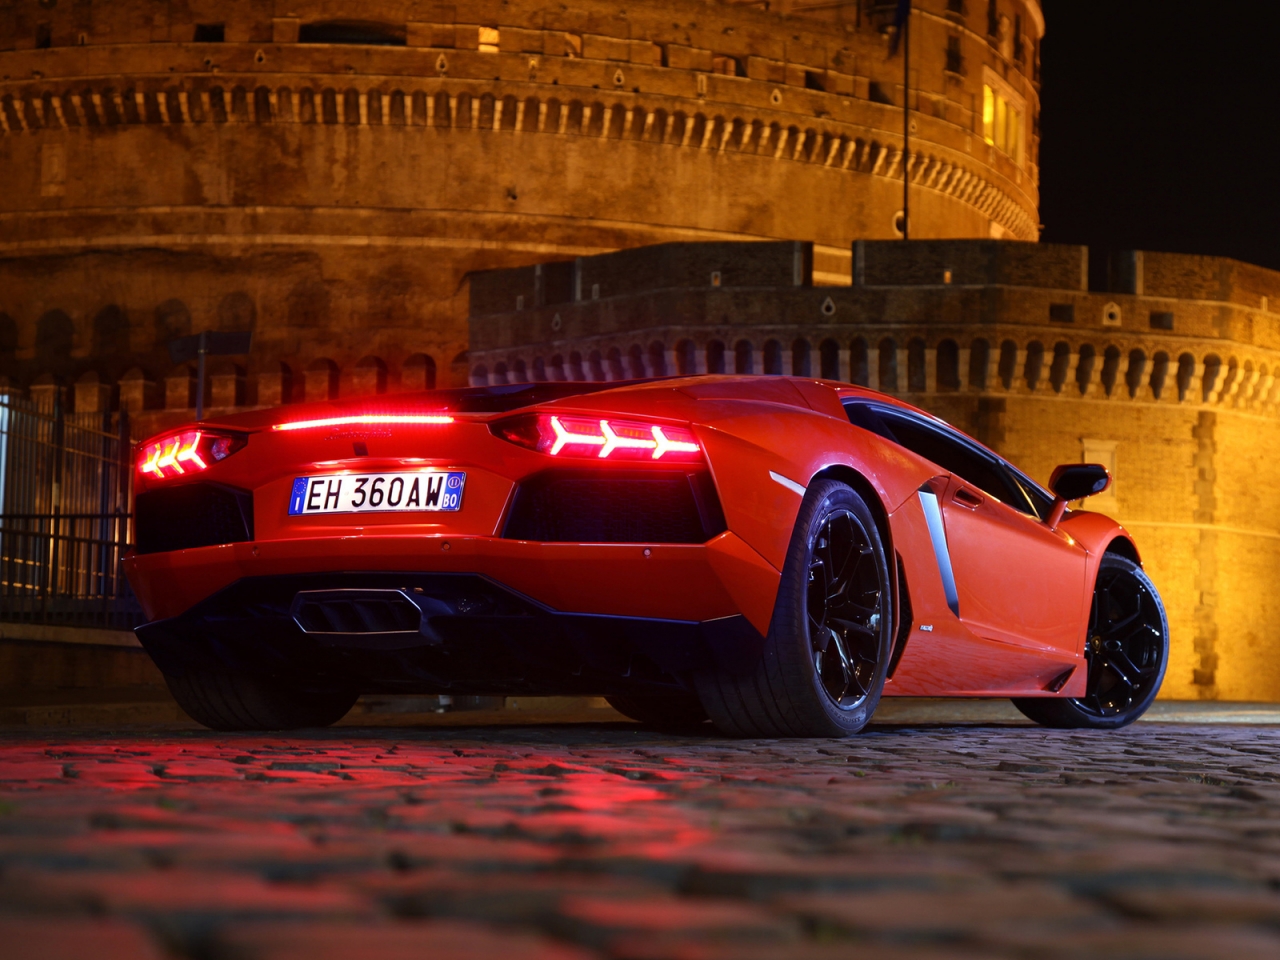 Red Lamborghini Aventador for 1280 x 960 resolution